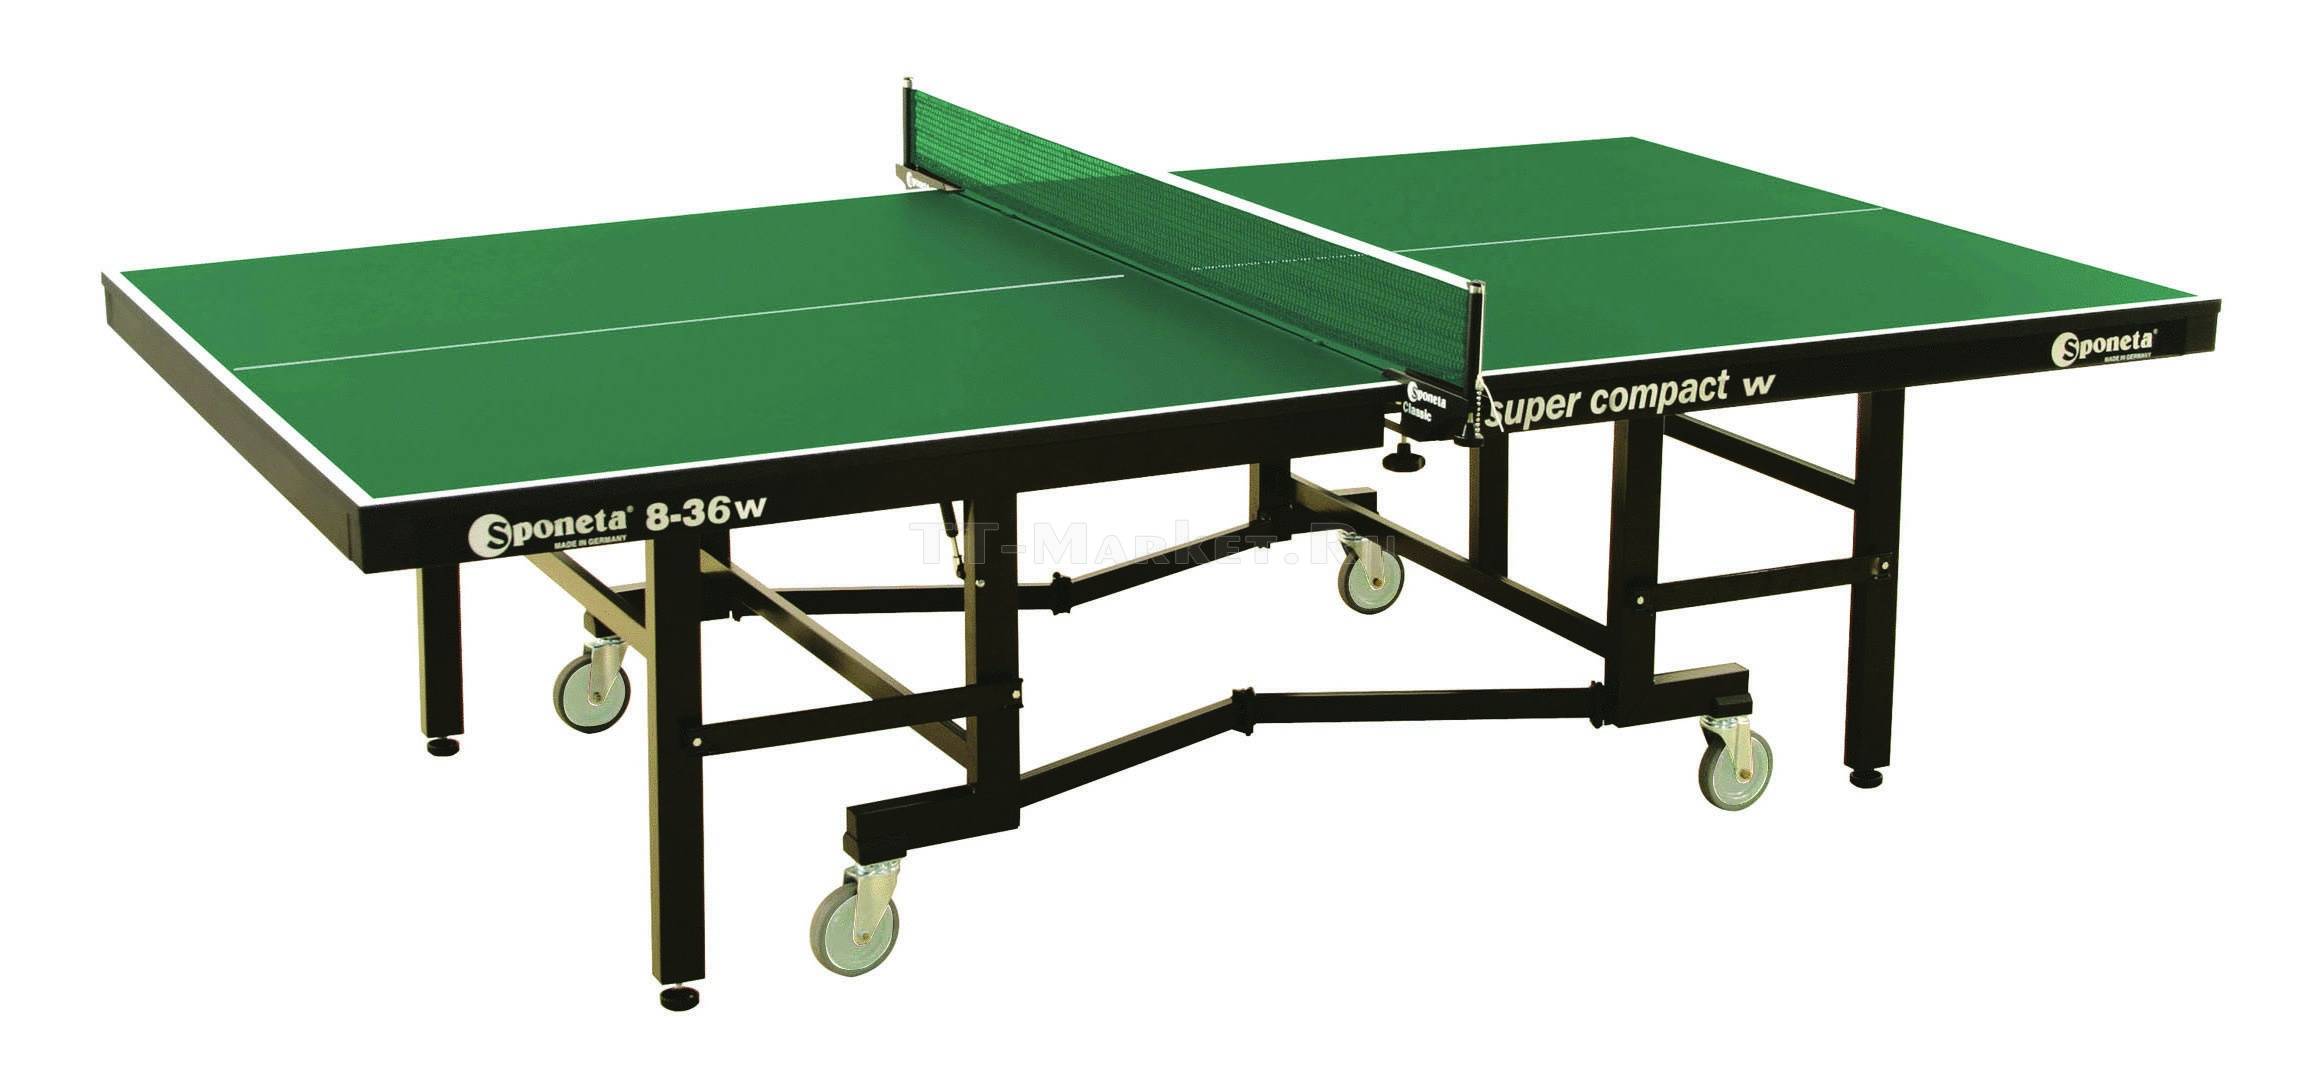 параметры теннисного стола для пинг понга